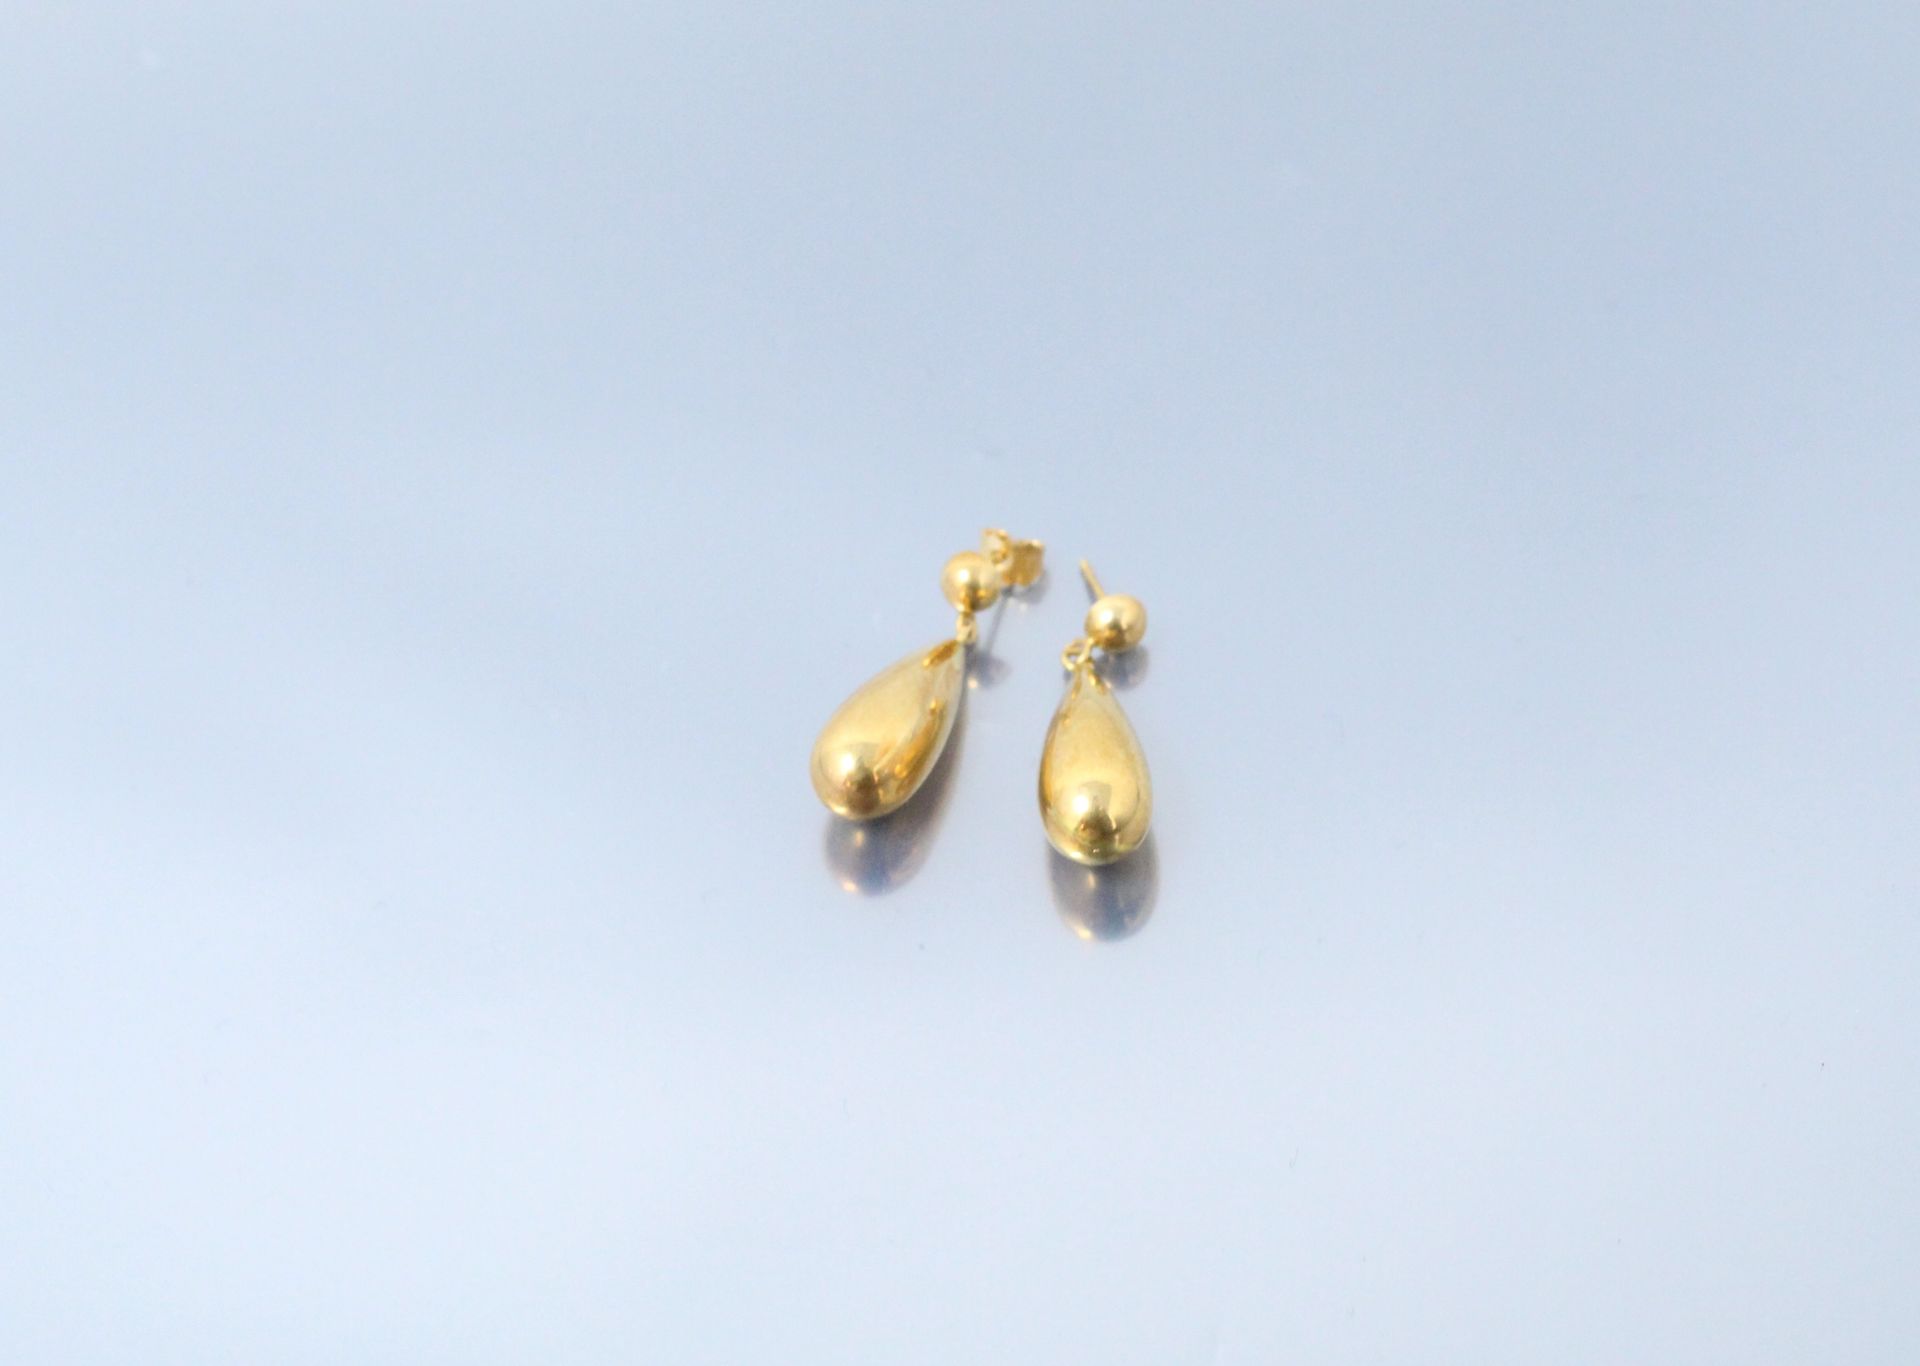 Null Paar Ohrringe aus 18k (750) Gelbgold in Birnenform.

Gewicht: 2,90 g.